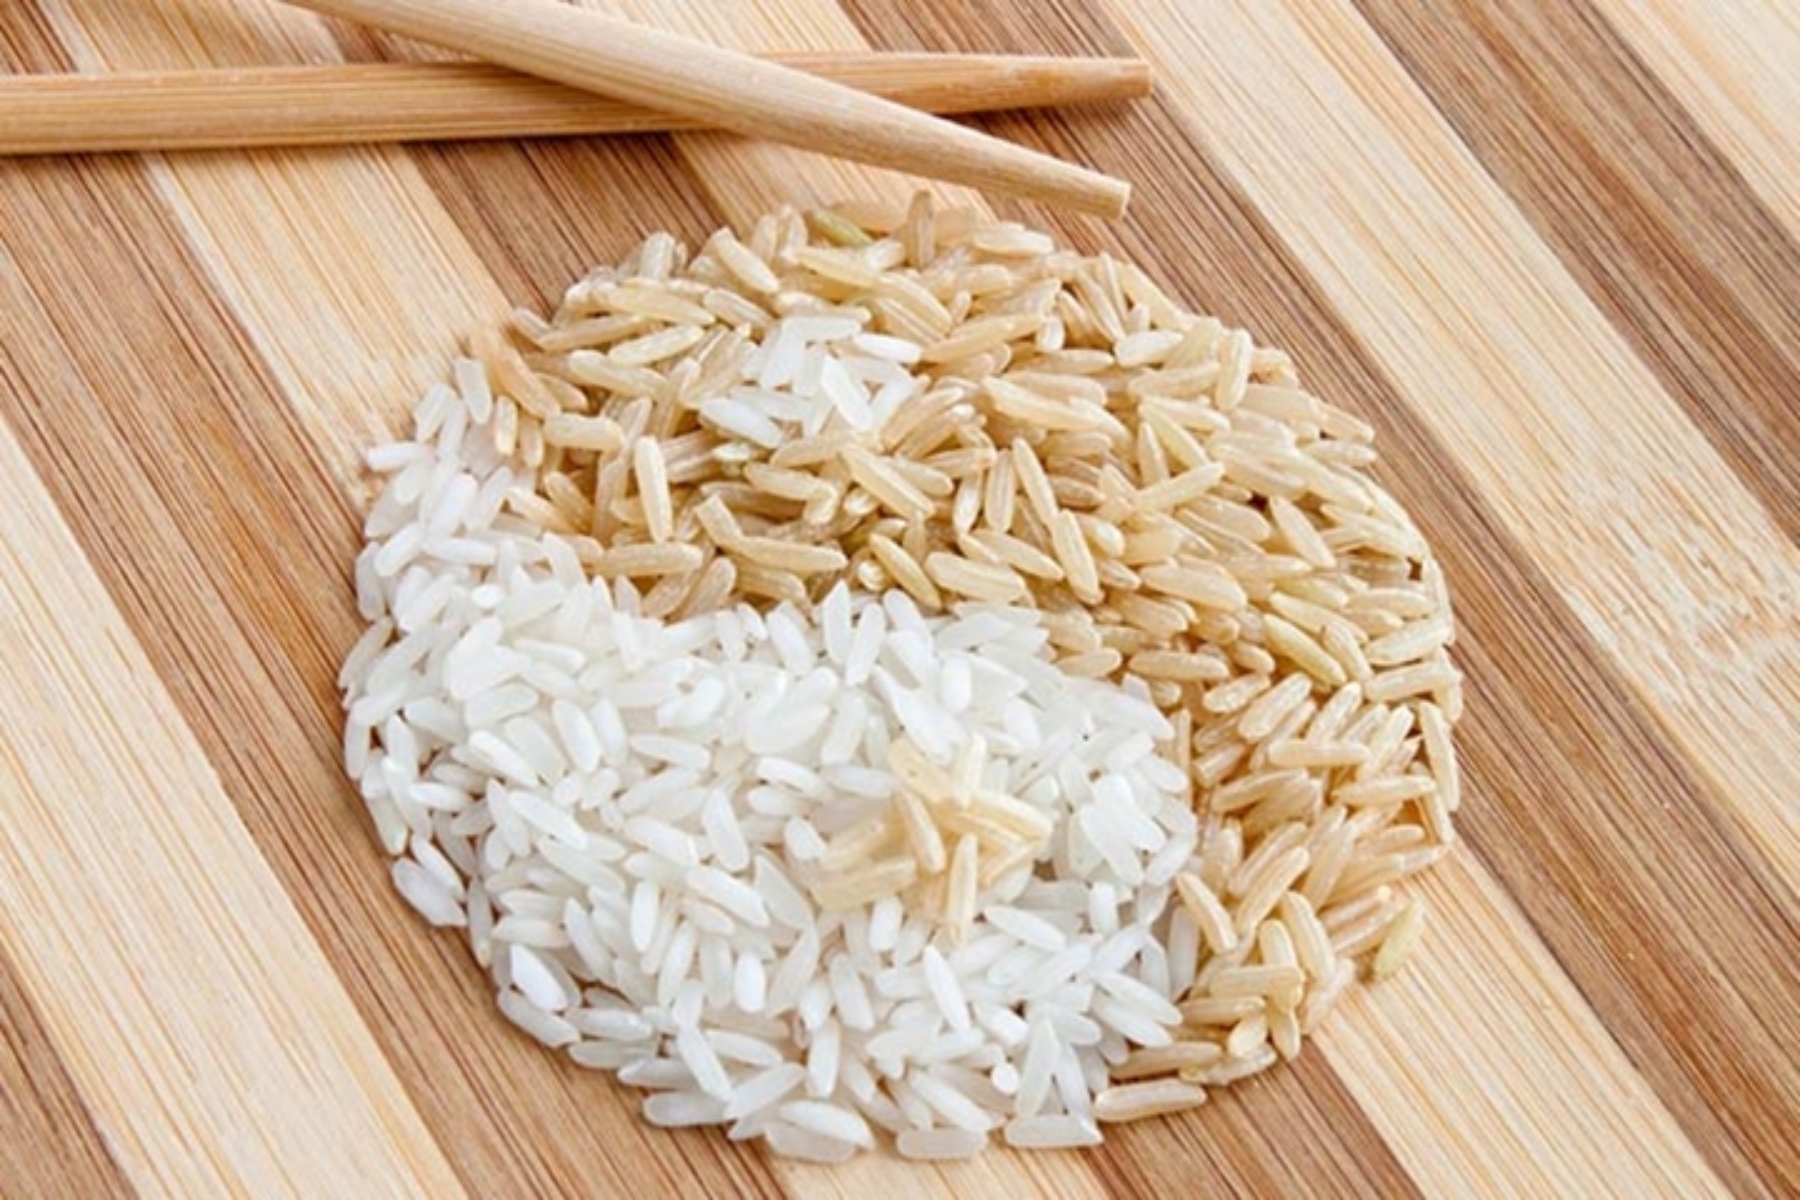 Ρύζι: Ποιο είναι το πιο υγιεινό ρύζι για τη διατροφή μας;